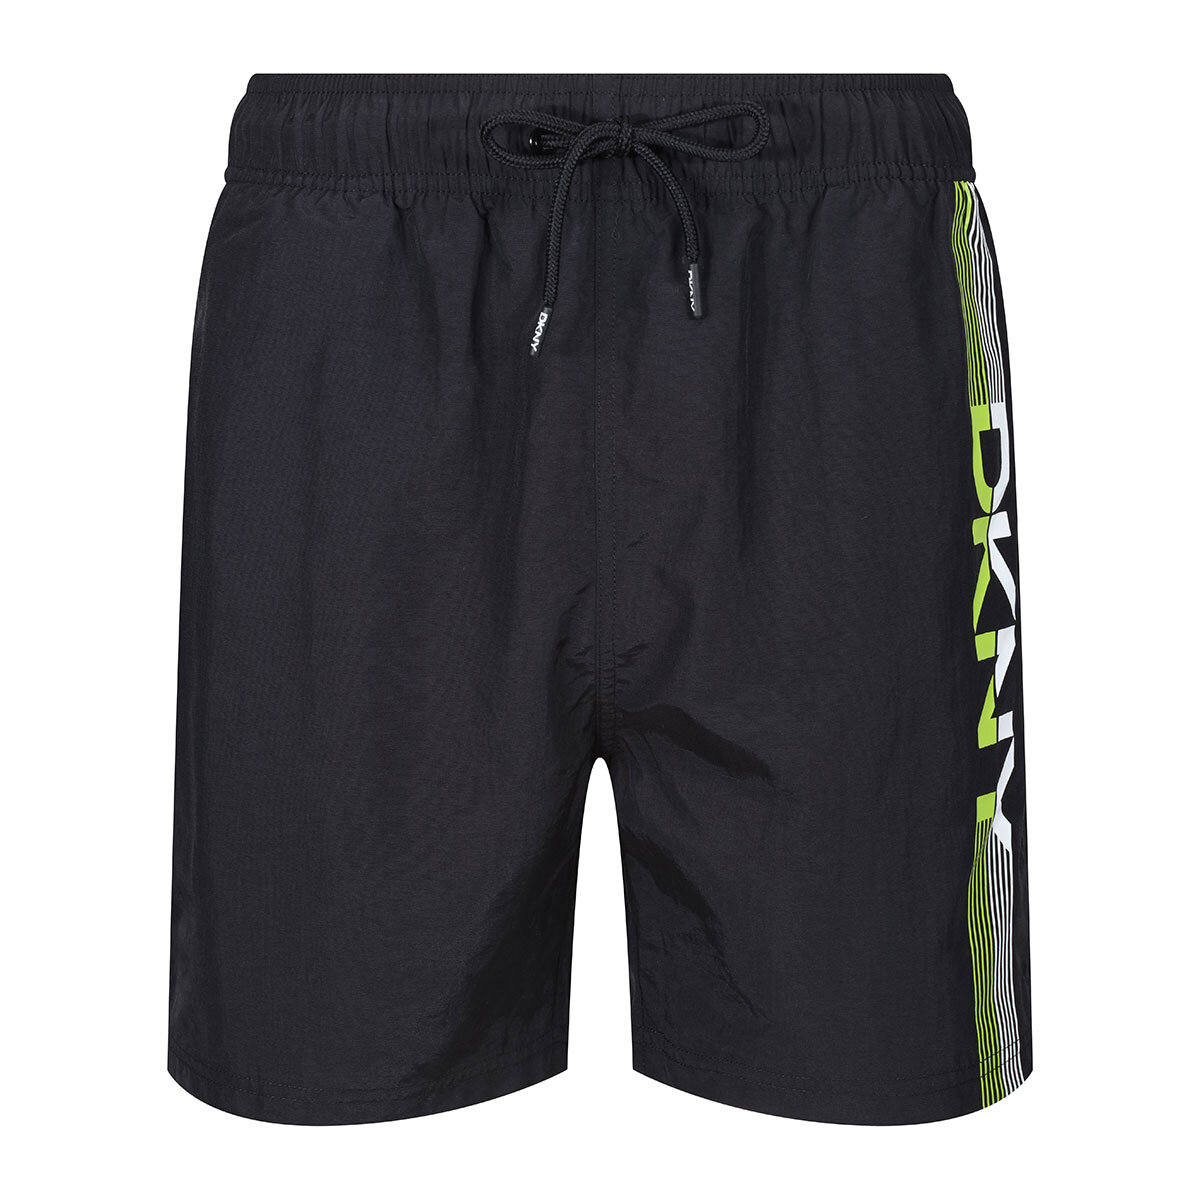 DKNY Mens Swim Shorts in Black | Costco UK